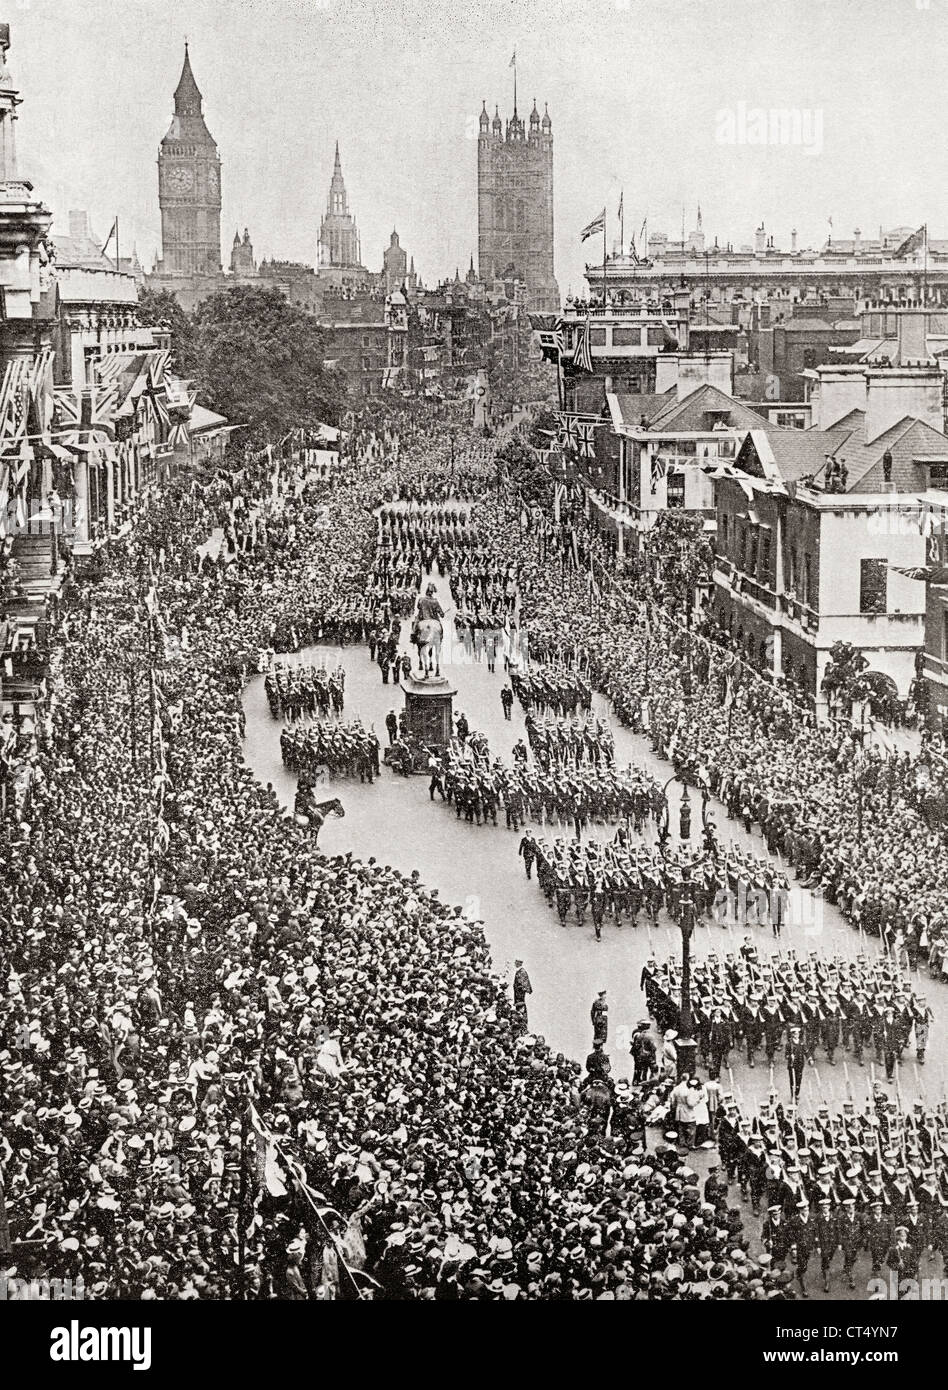 La marine britannique dans la victoire de mars Juillet 19th, 1919 dans la région de Whitehall, Londres, Angleterre célébrant la fin de la Première Guerre mondiale. Banque D'Images